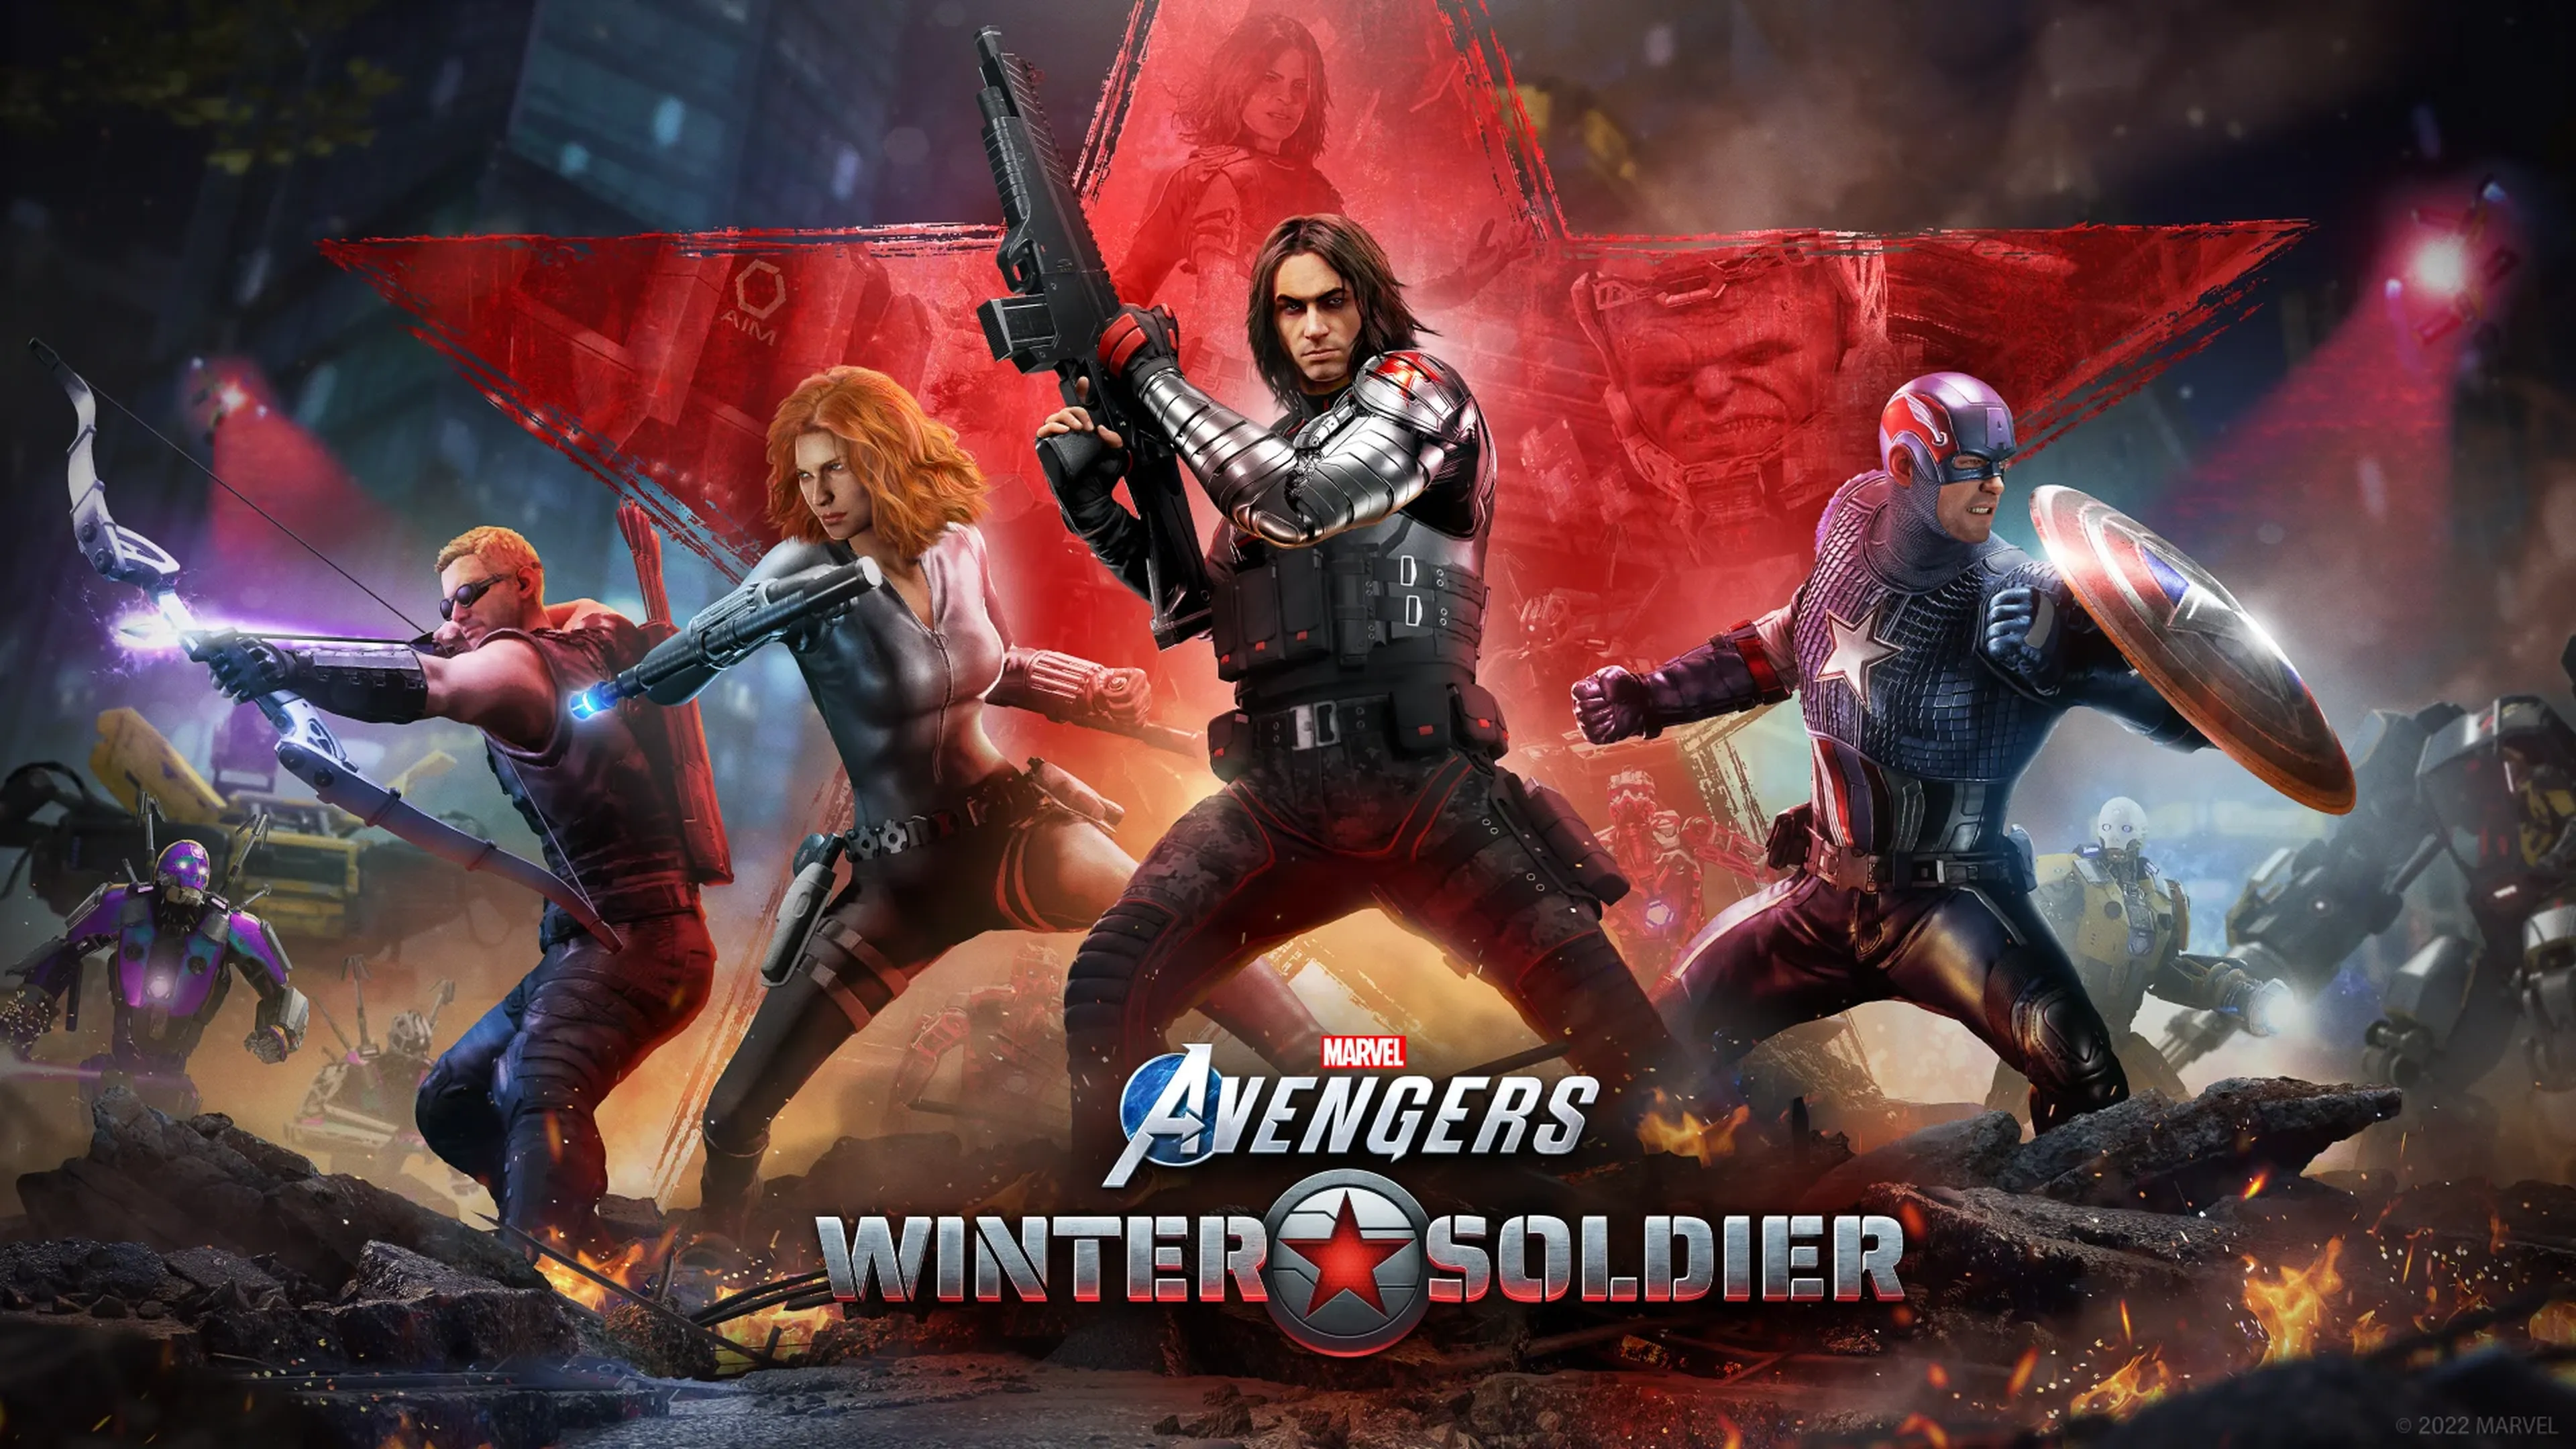 Marvel Avengers Winter Soldier